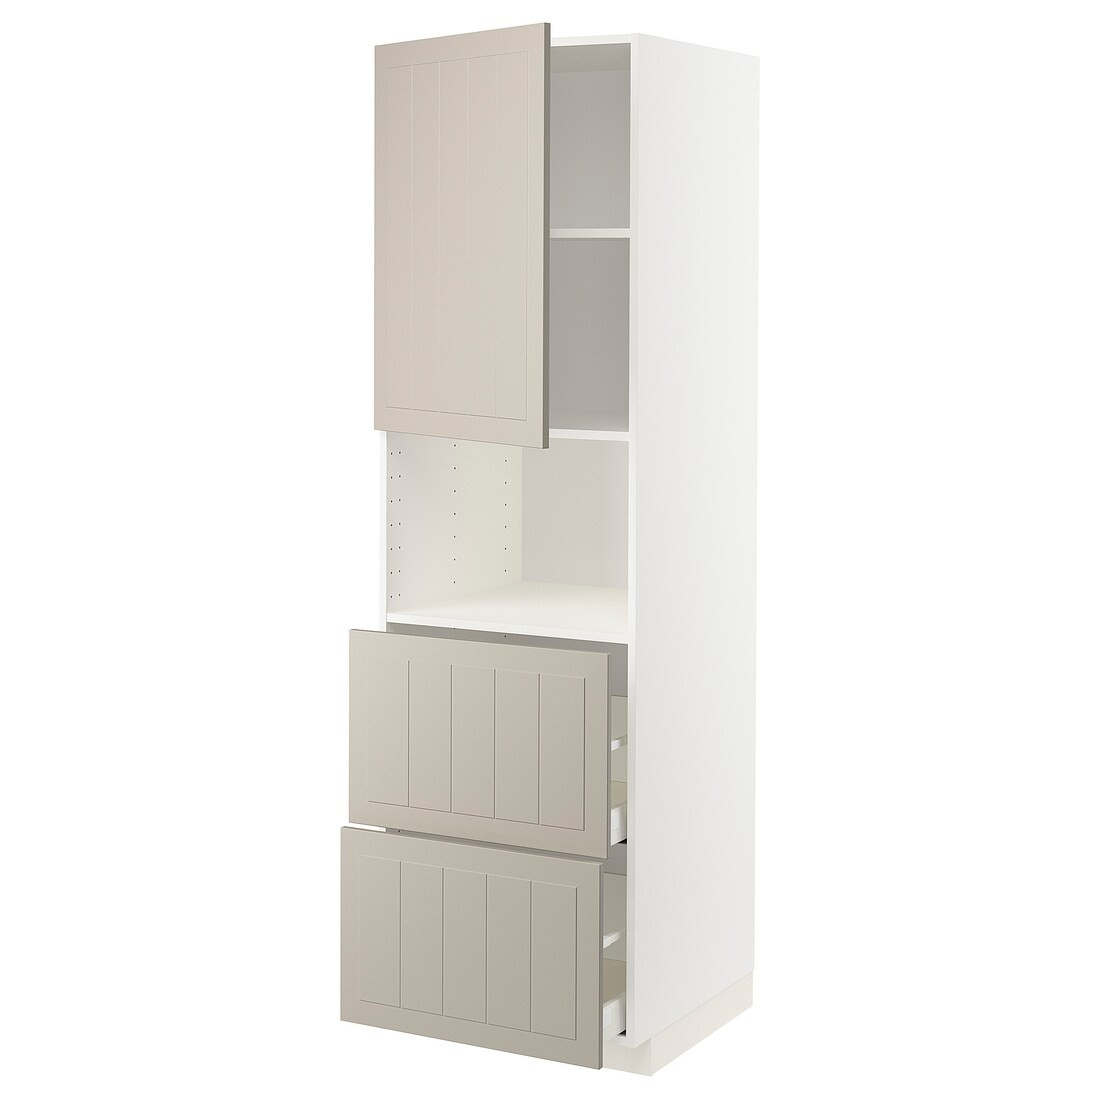 METOD МЕТОД / MAXIMERA МАКСИМЕРА Высокий шкаф для микроволновки с дверями / 2 ящика, белый / Stensund бежевый, 60x60x200 см